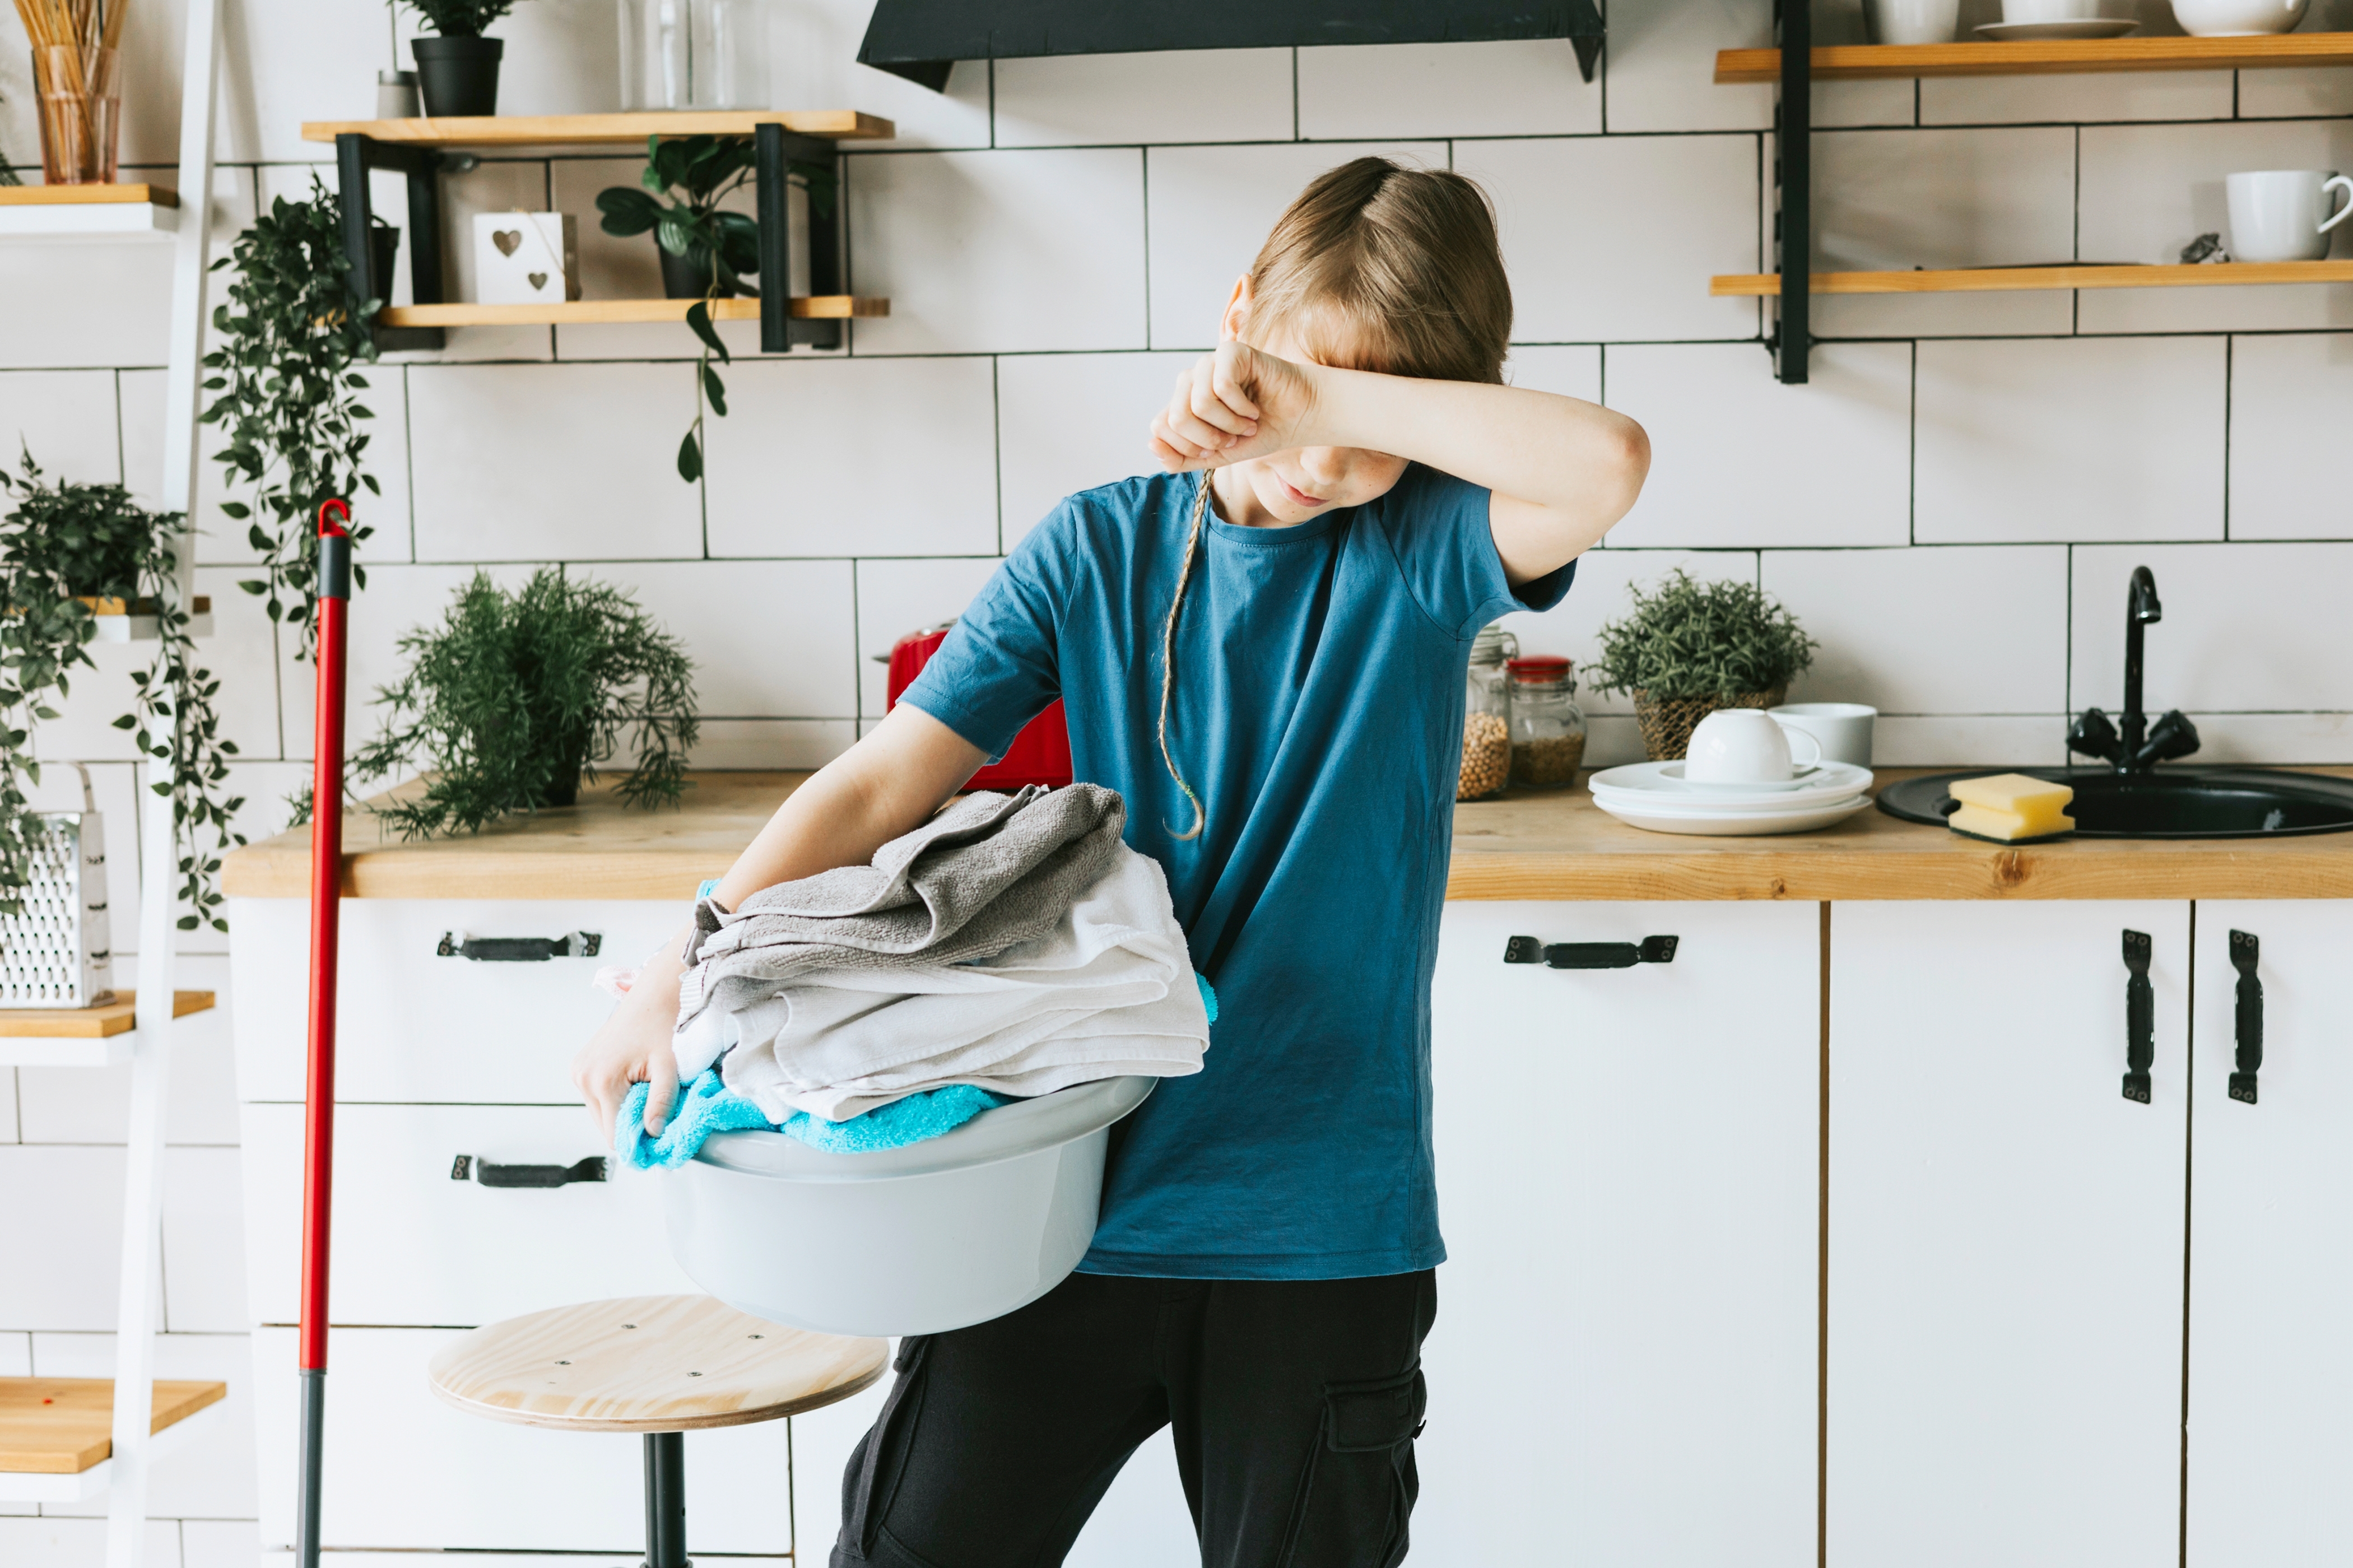 Junge trägt einen Wäschekorb | Quelle: Shutterstock